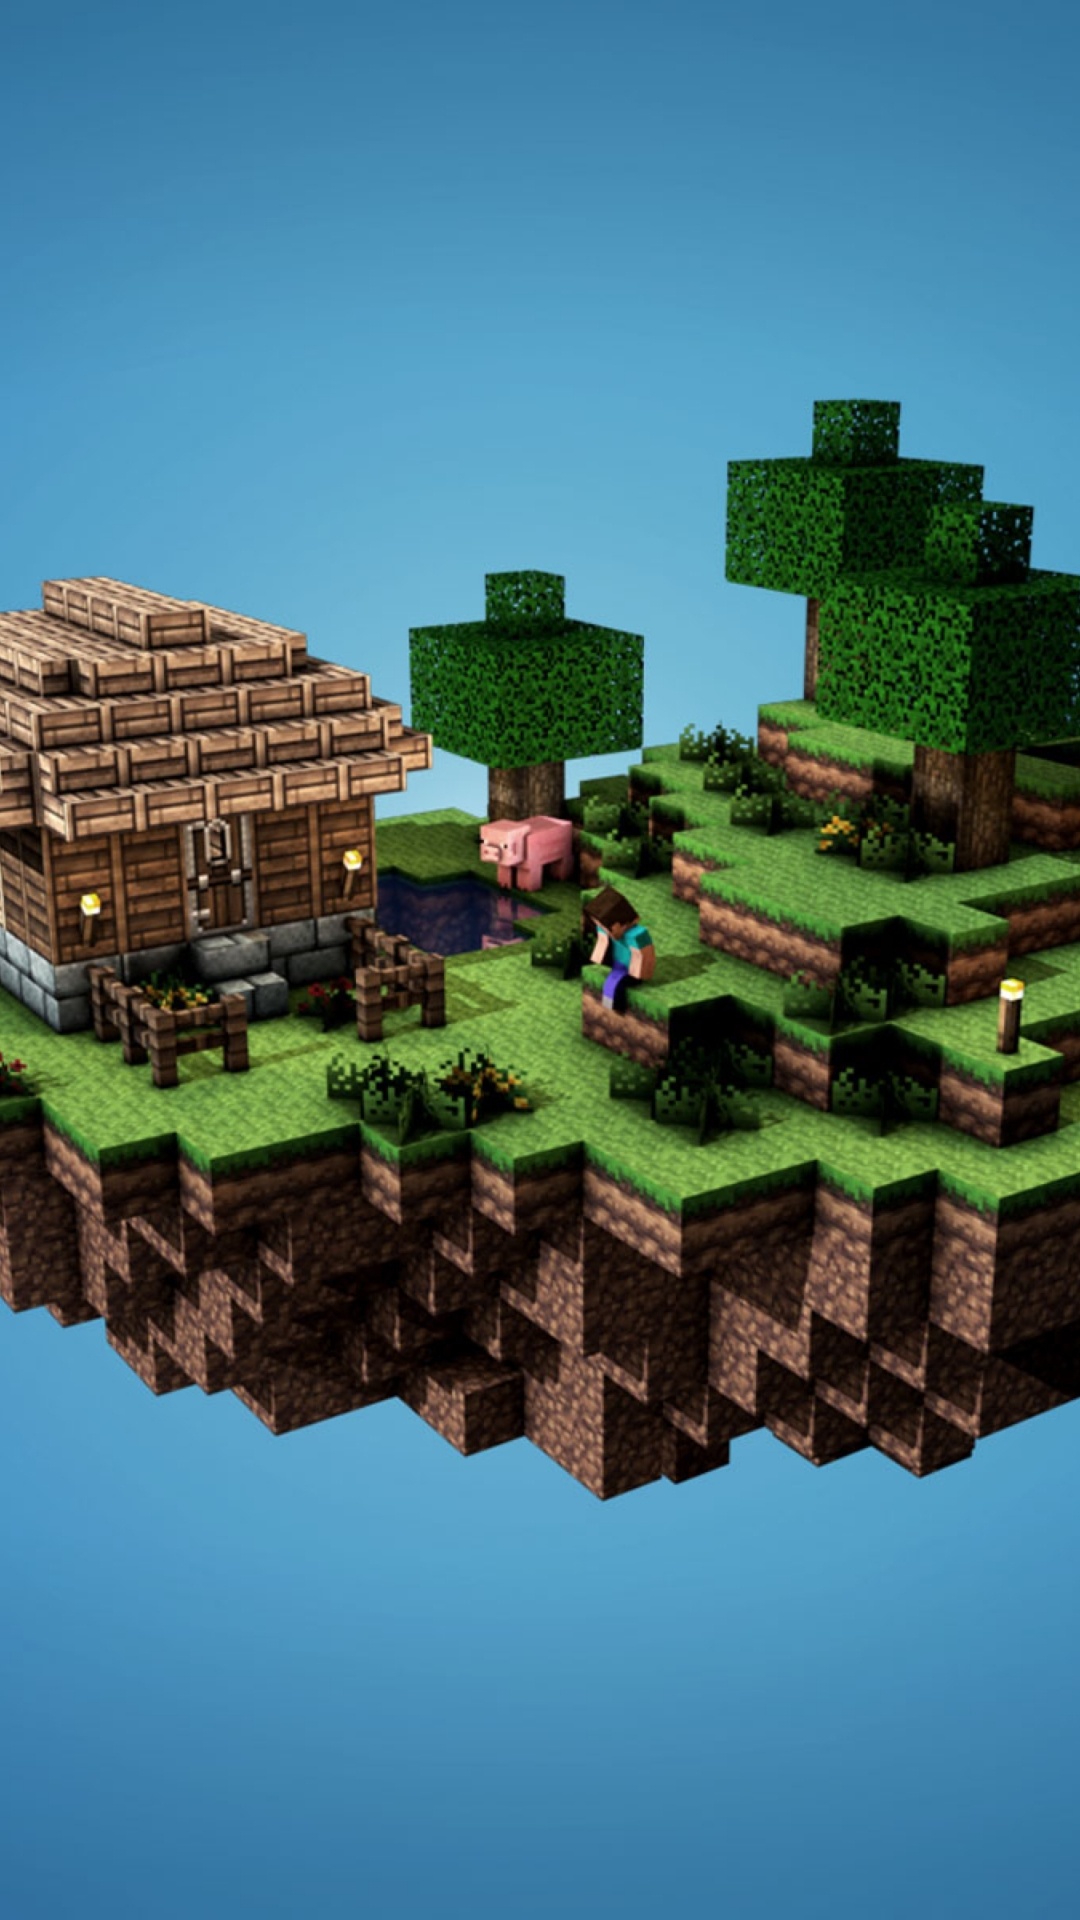 Minecraft, Baum, Städtebau, Überleben, Survival-Spiel. Wallpaper in 1080x1920 Resolution